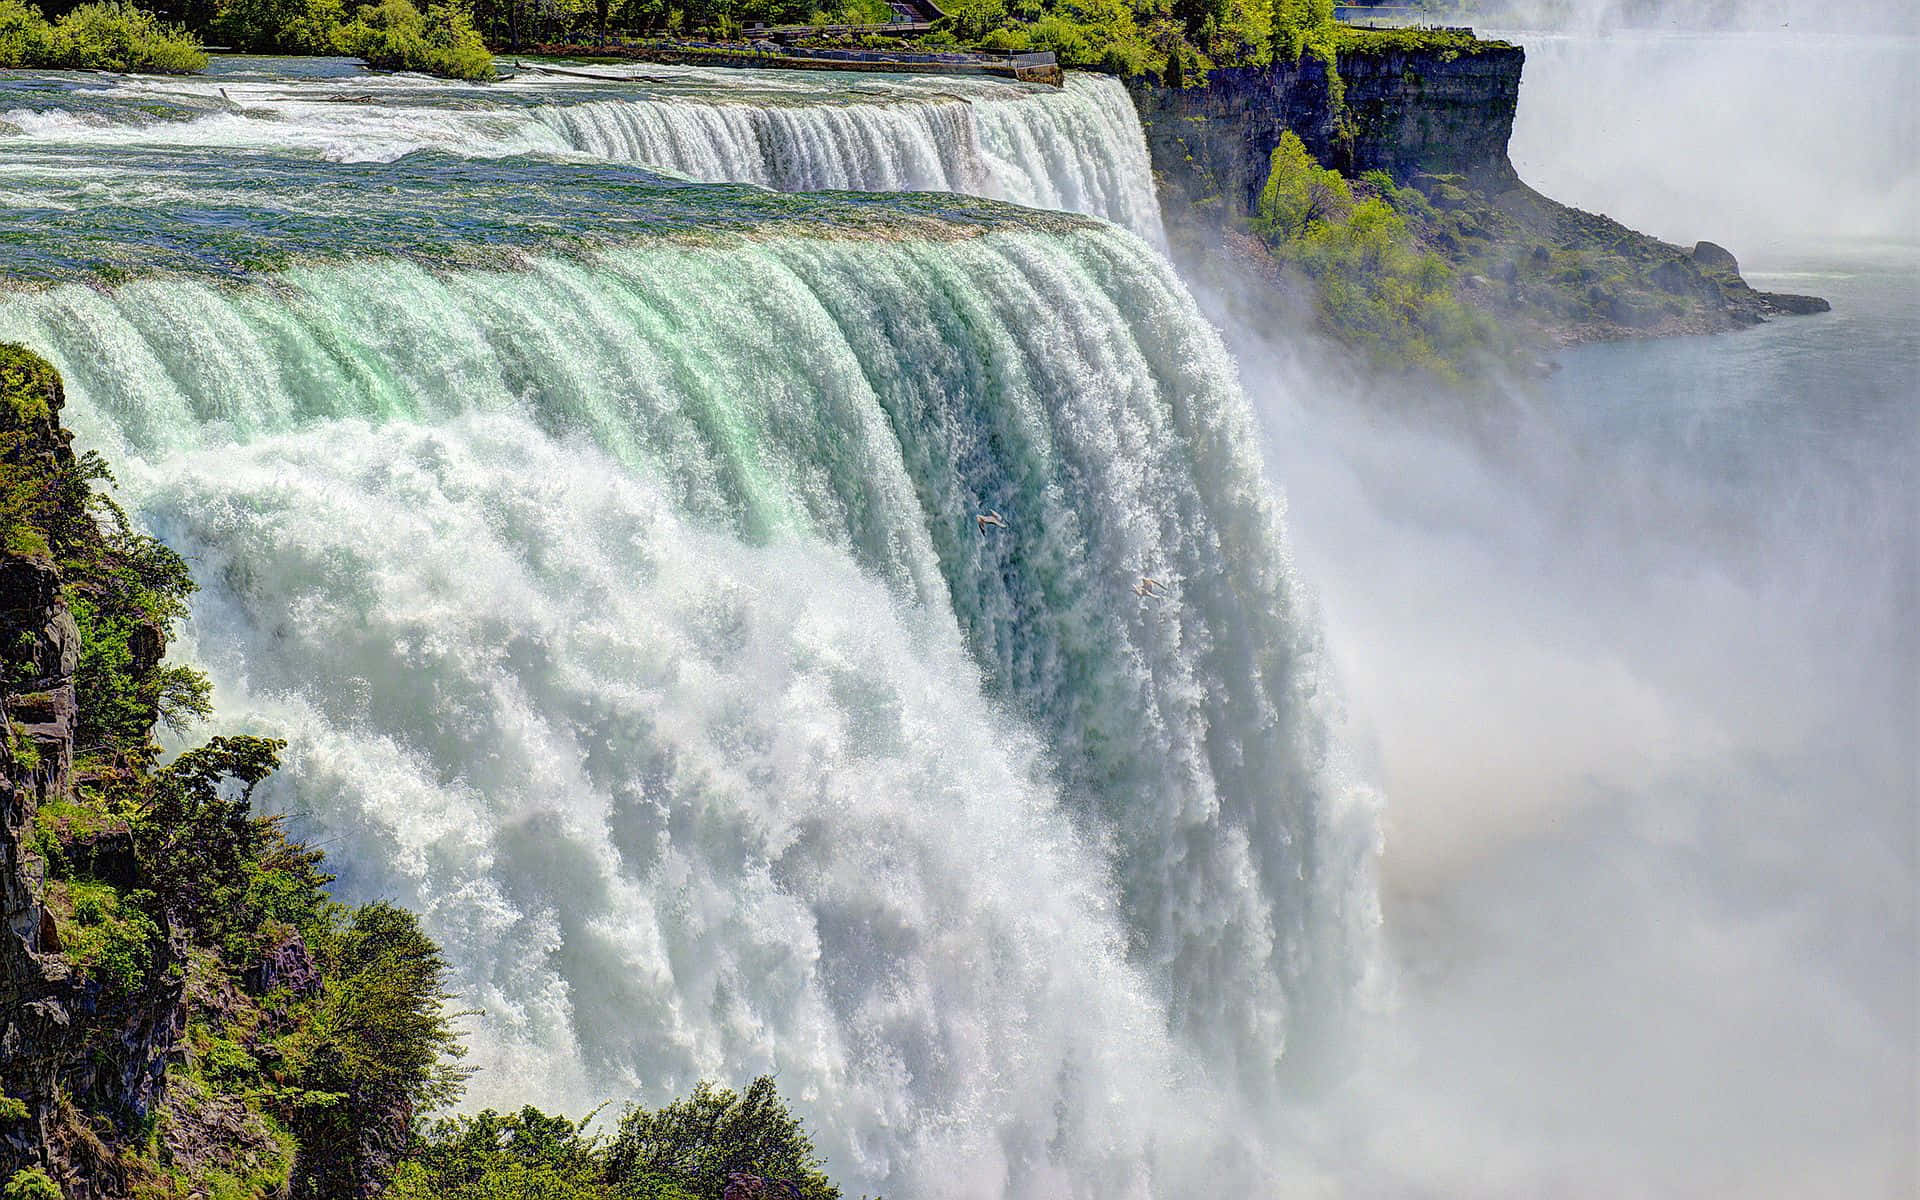 Immaginele Potenti Cascate Del Niagara